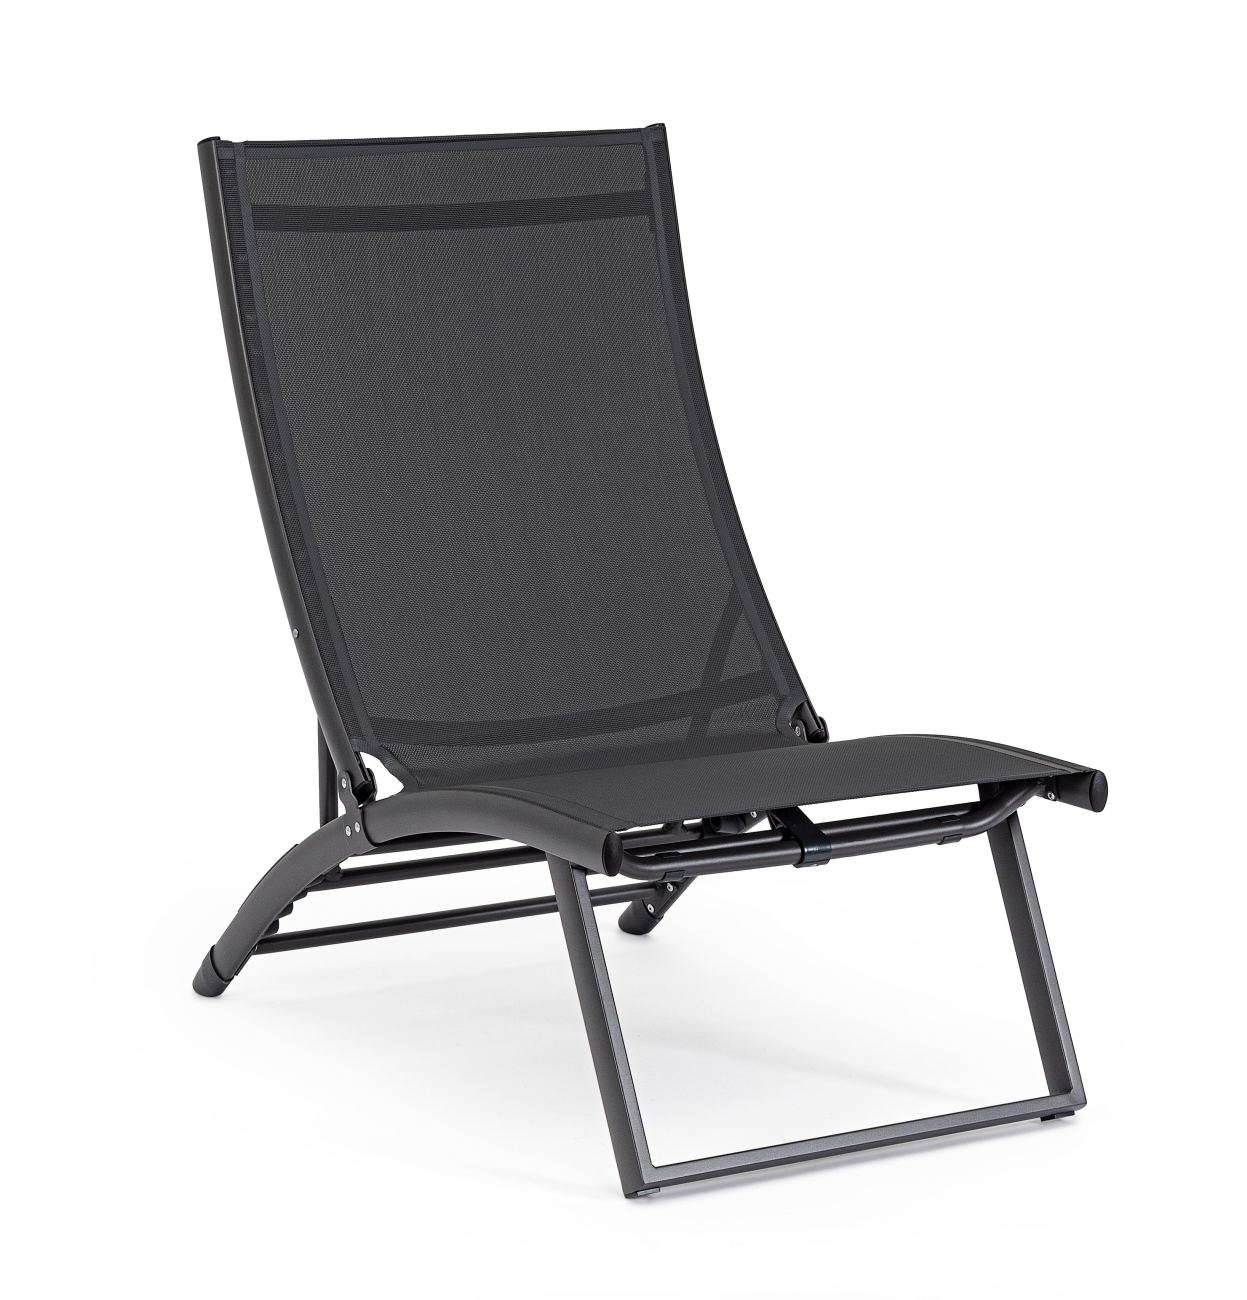 Der Loungesessel Taylor überzeugt mit seinem modernen Design. Gefertigt wurde er aus Textilene, welches einen dunkelgrauen Farbton besitzt. Das Gestell ist aus Metall und hat eine dunkelgraue Farbe. Der Sessel ist klappbar.